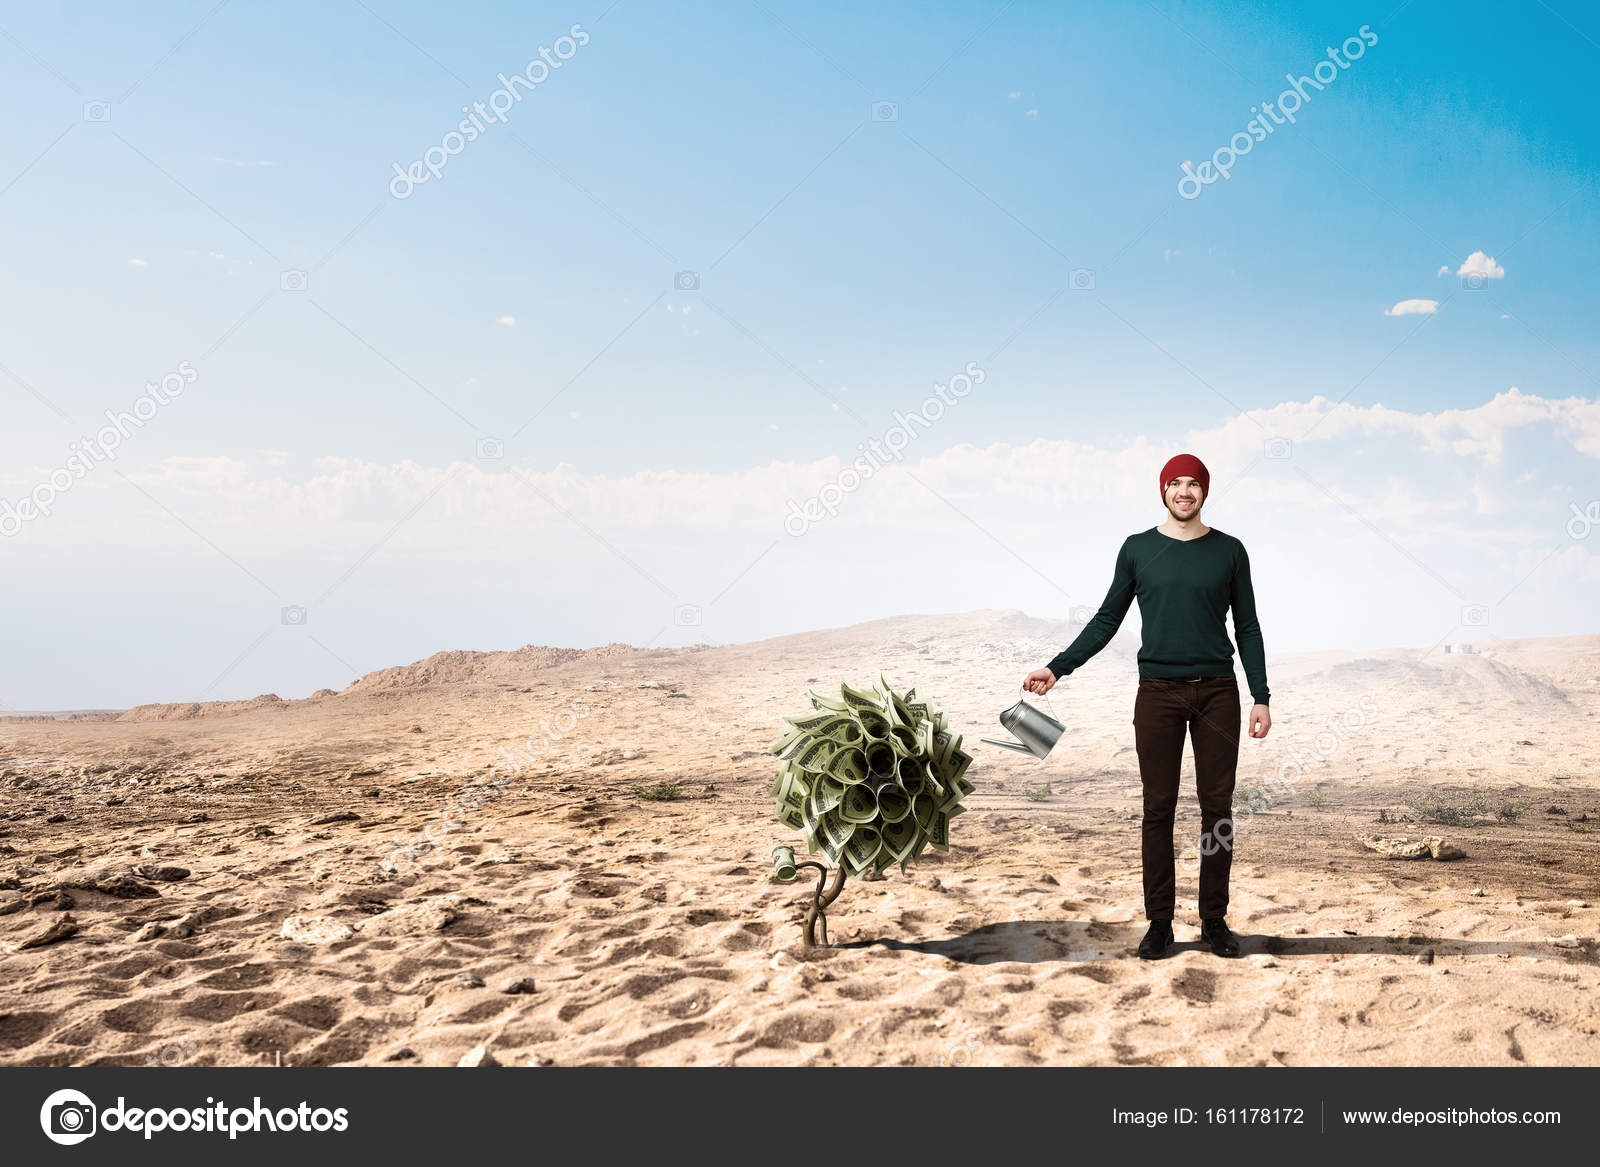 Стало пустынно поля засеяны незаслуженная обида. Фото парня в пустыне поливает я водой.